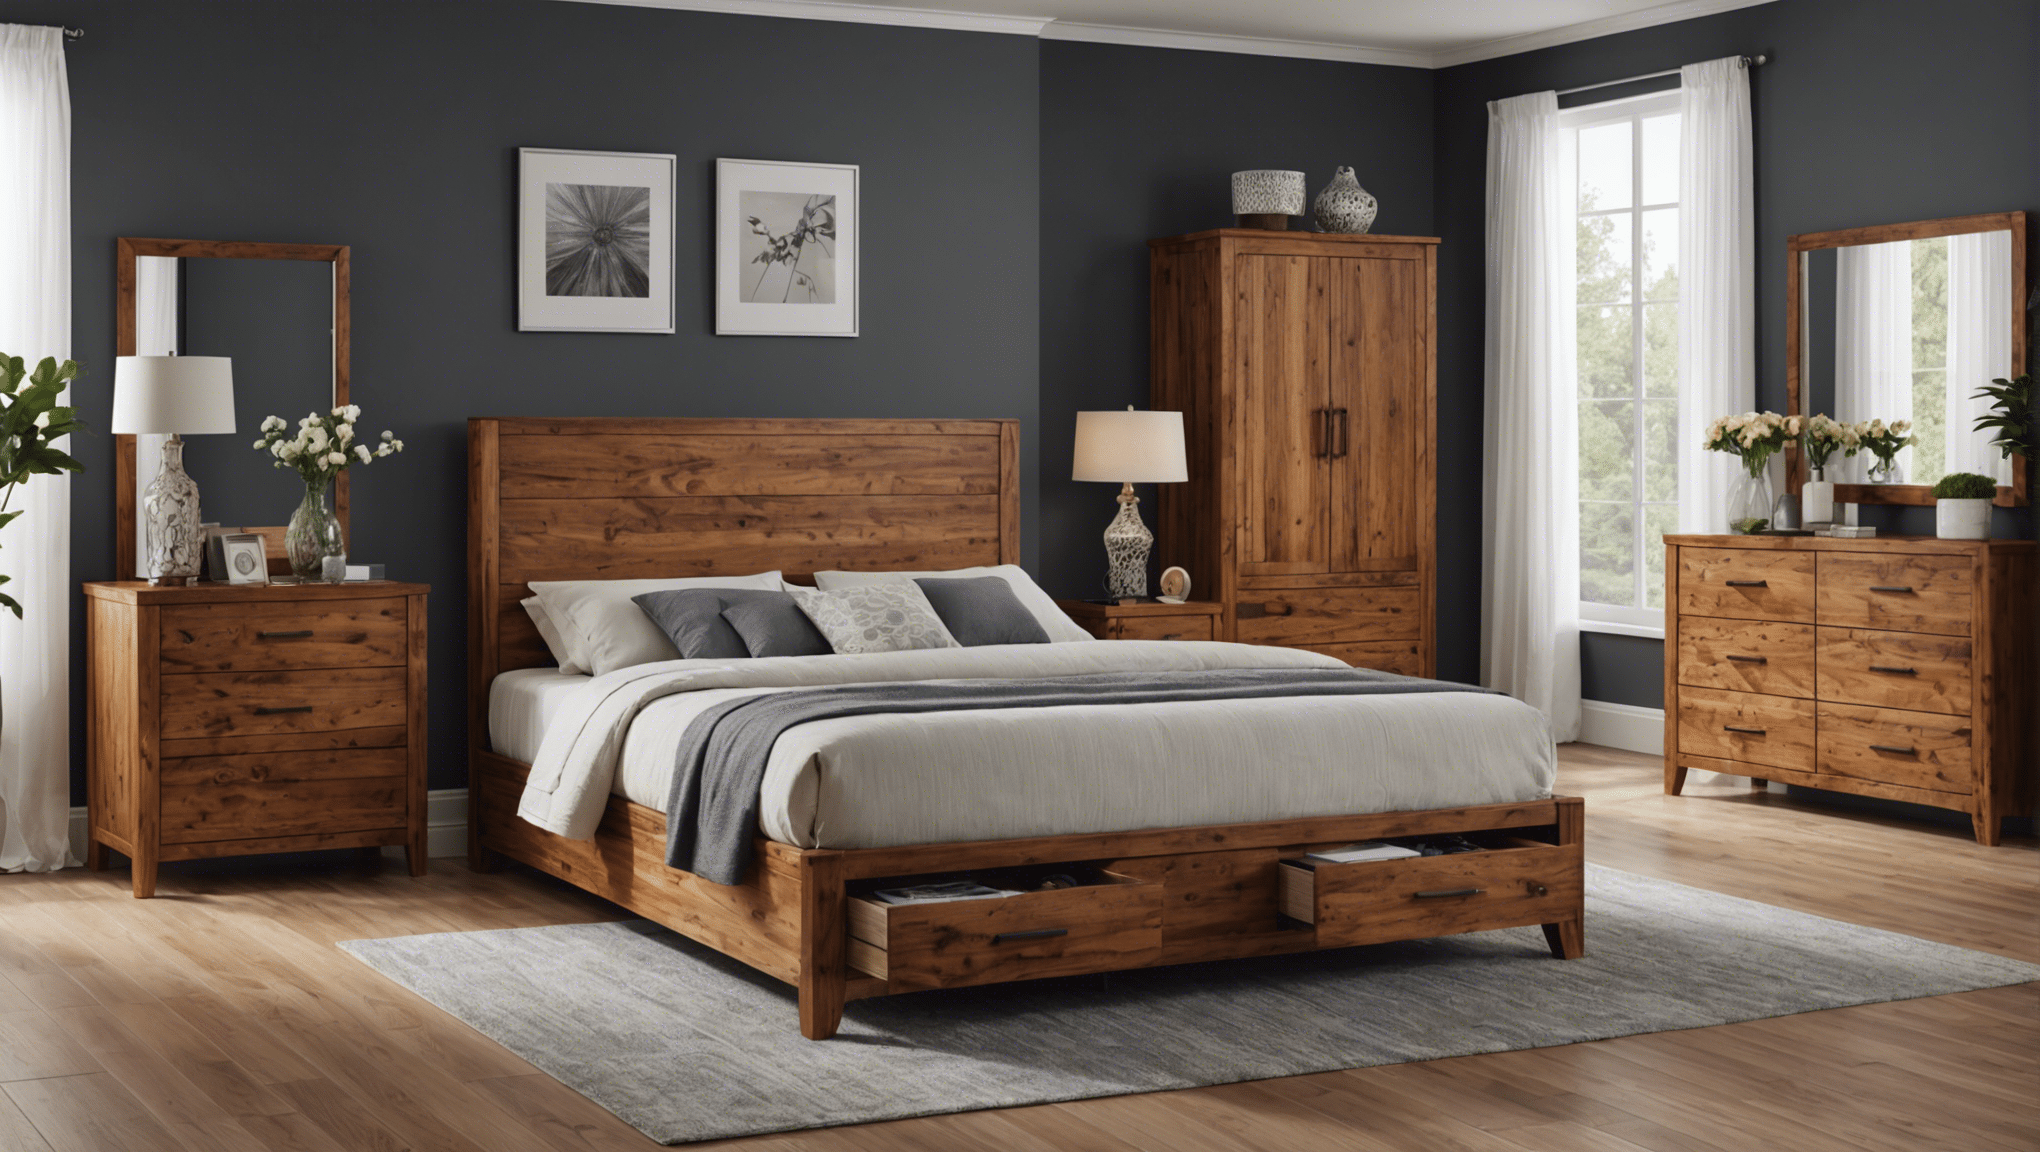 découvrez tikamoon, la référence en mobilier en bois de qualité. trouvez des meubles uniques et durables pour sublimer votre intérieur.